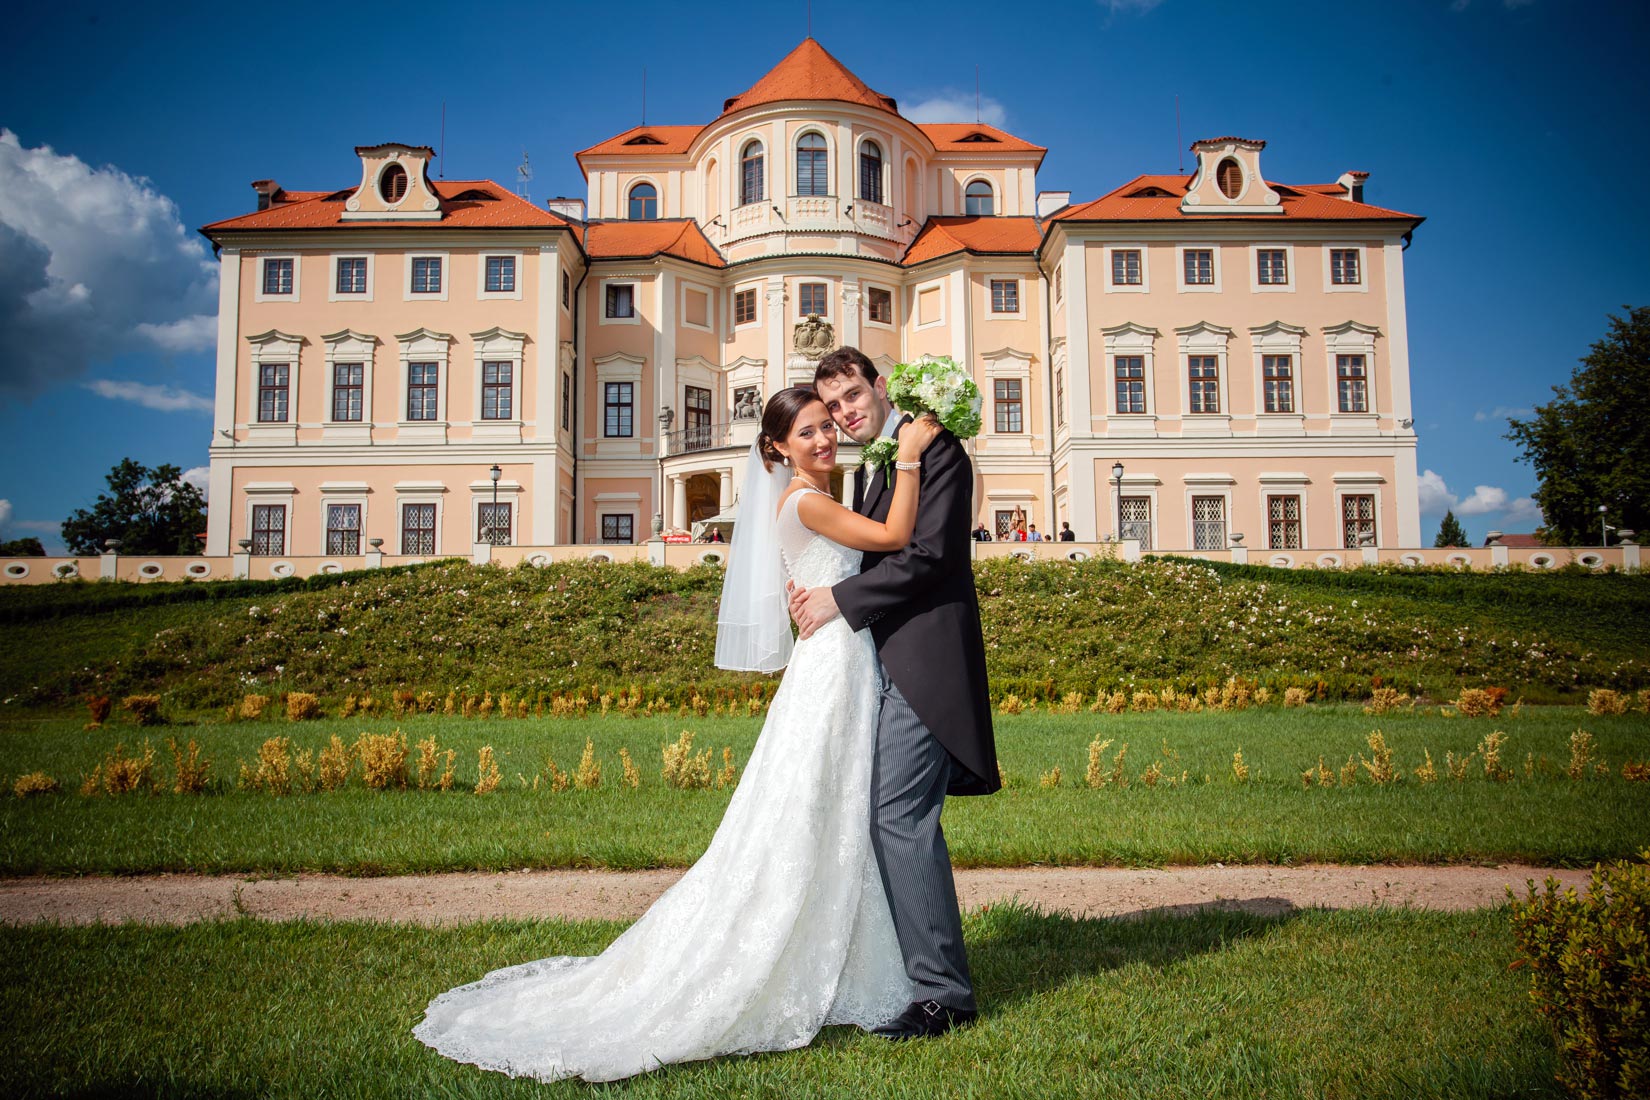 Chateau Liblice wedding - AL - wedding day photography